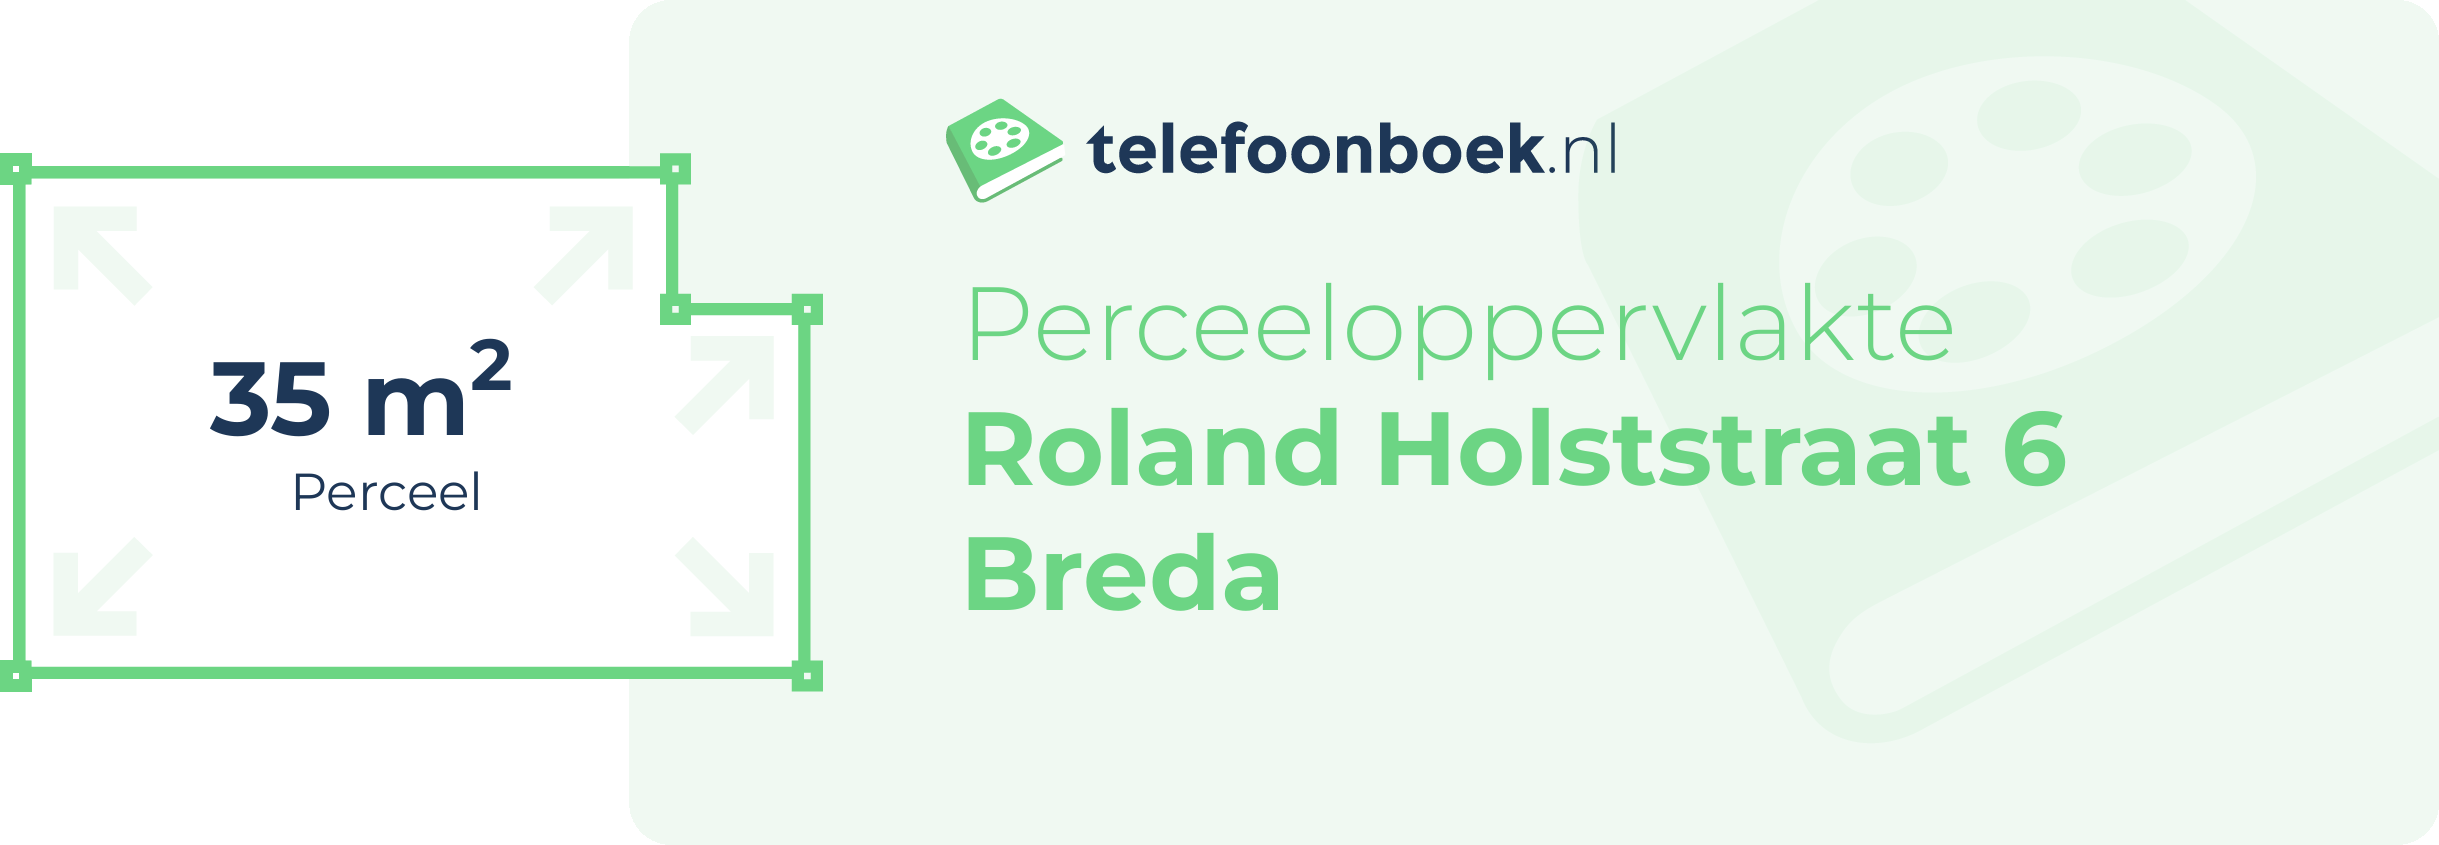 Perceeloppervlakte Roland Holststraat 6 Breda